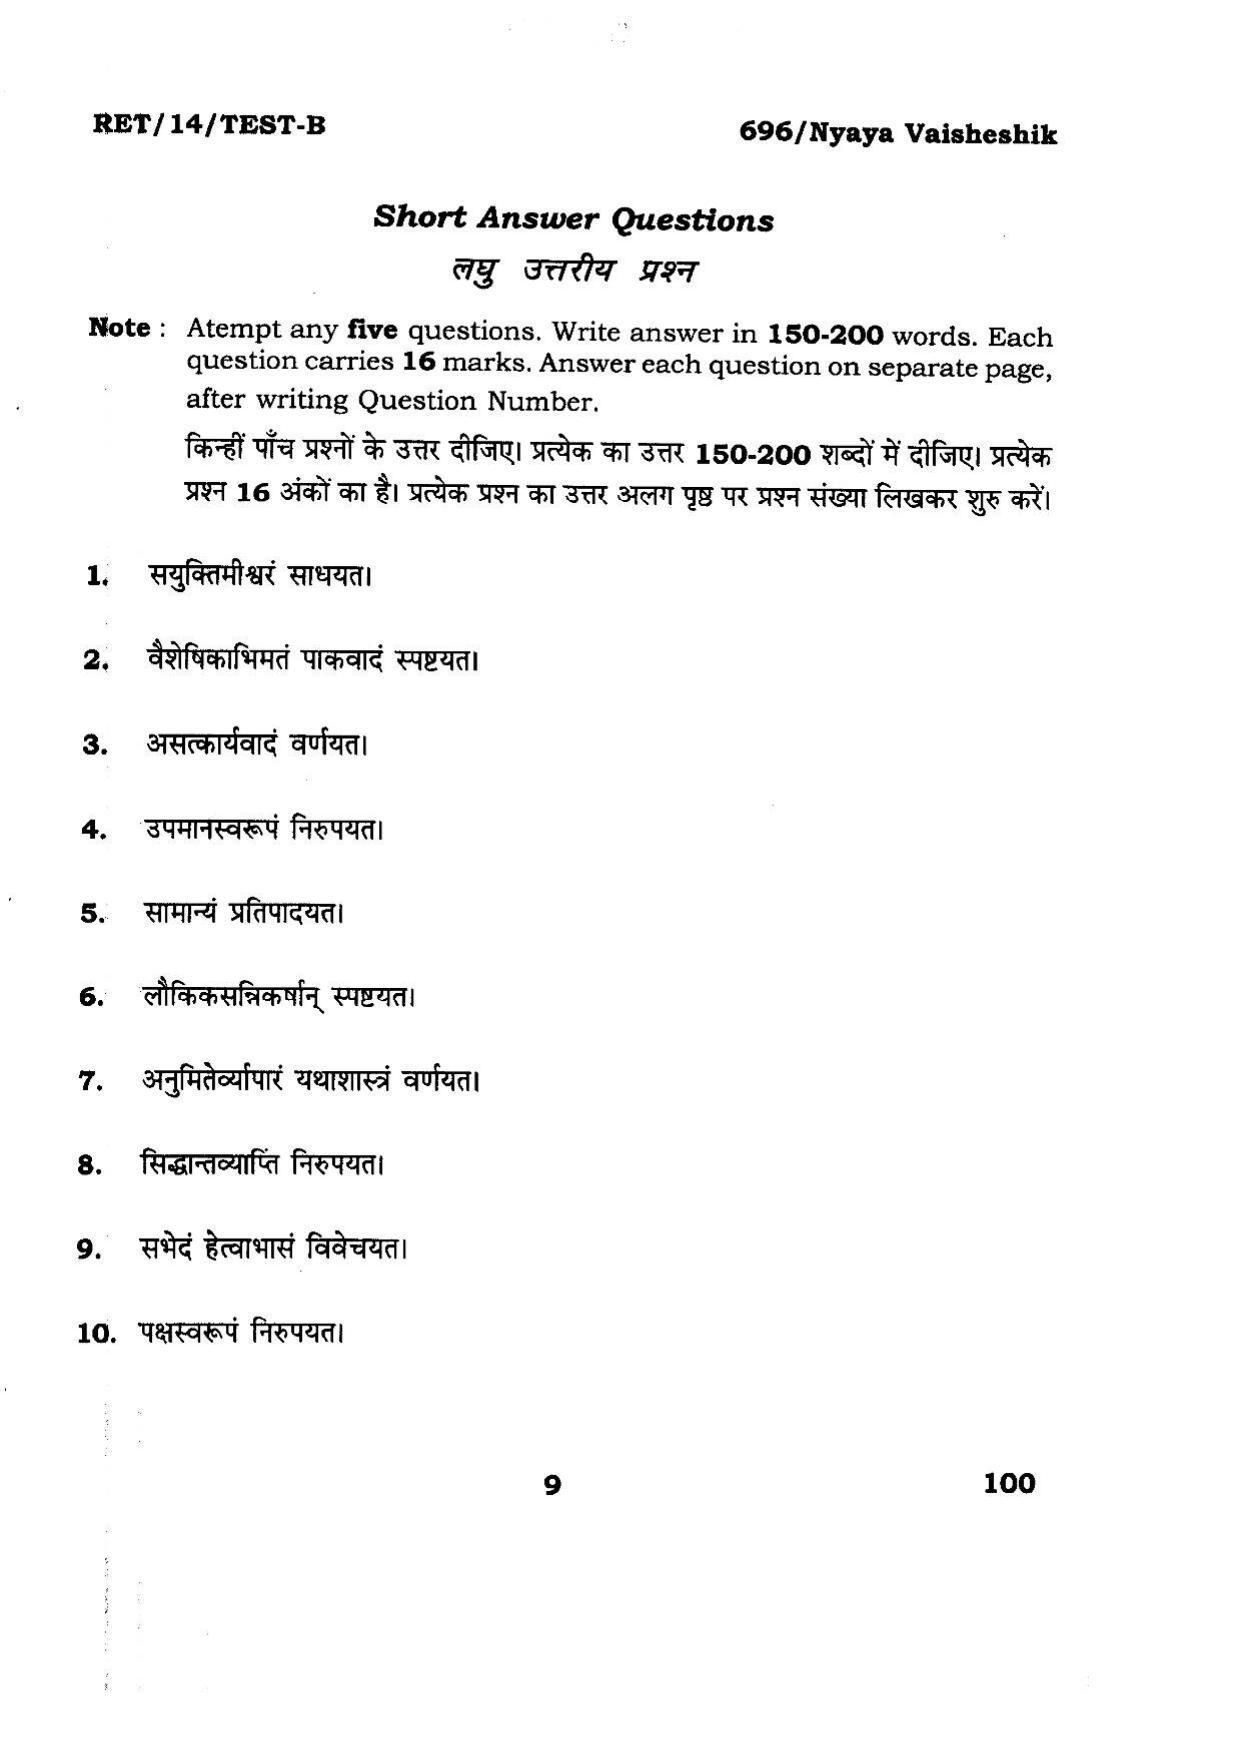 BHU RET Nyaya Vaisheshik 2014 Question Paper - Page 9